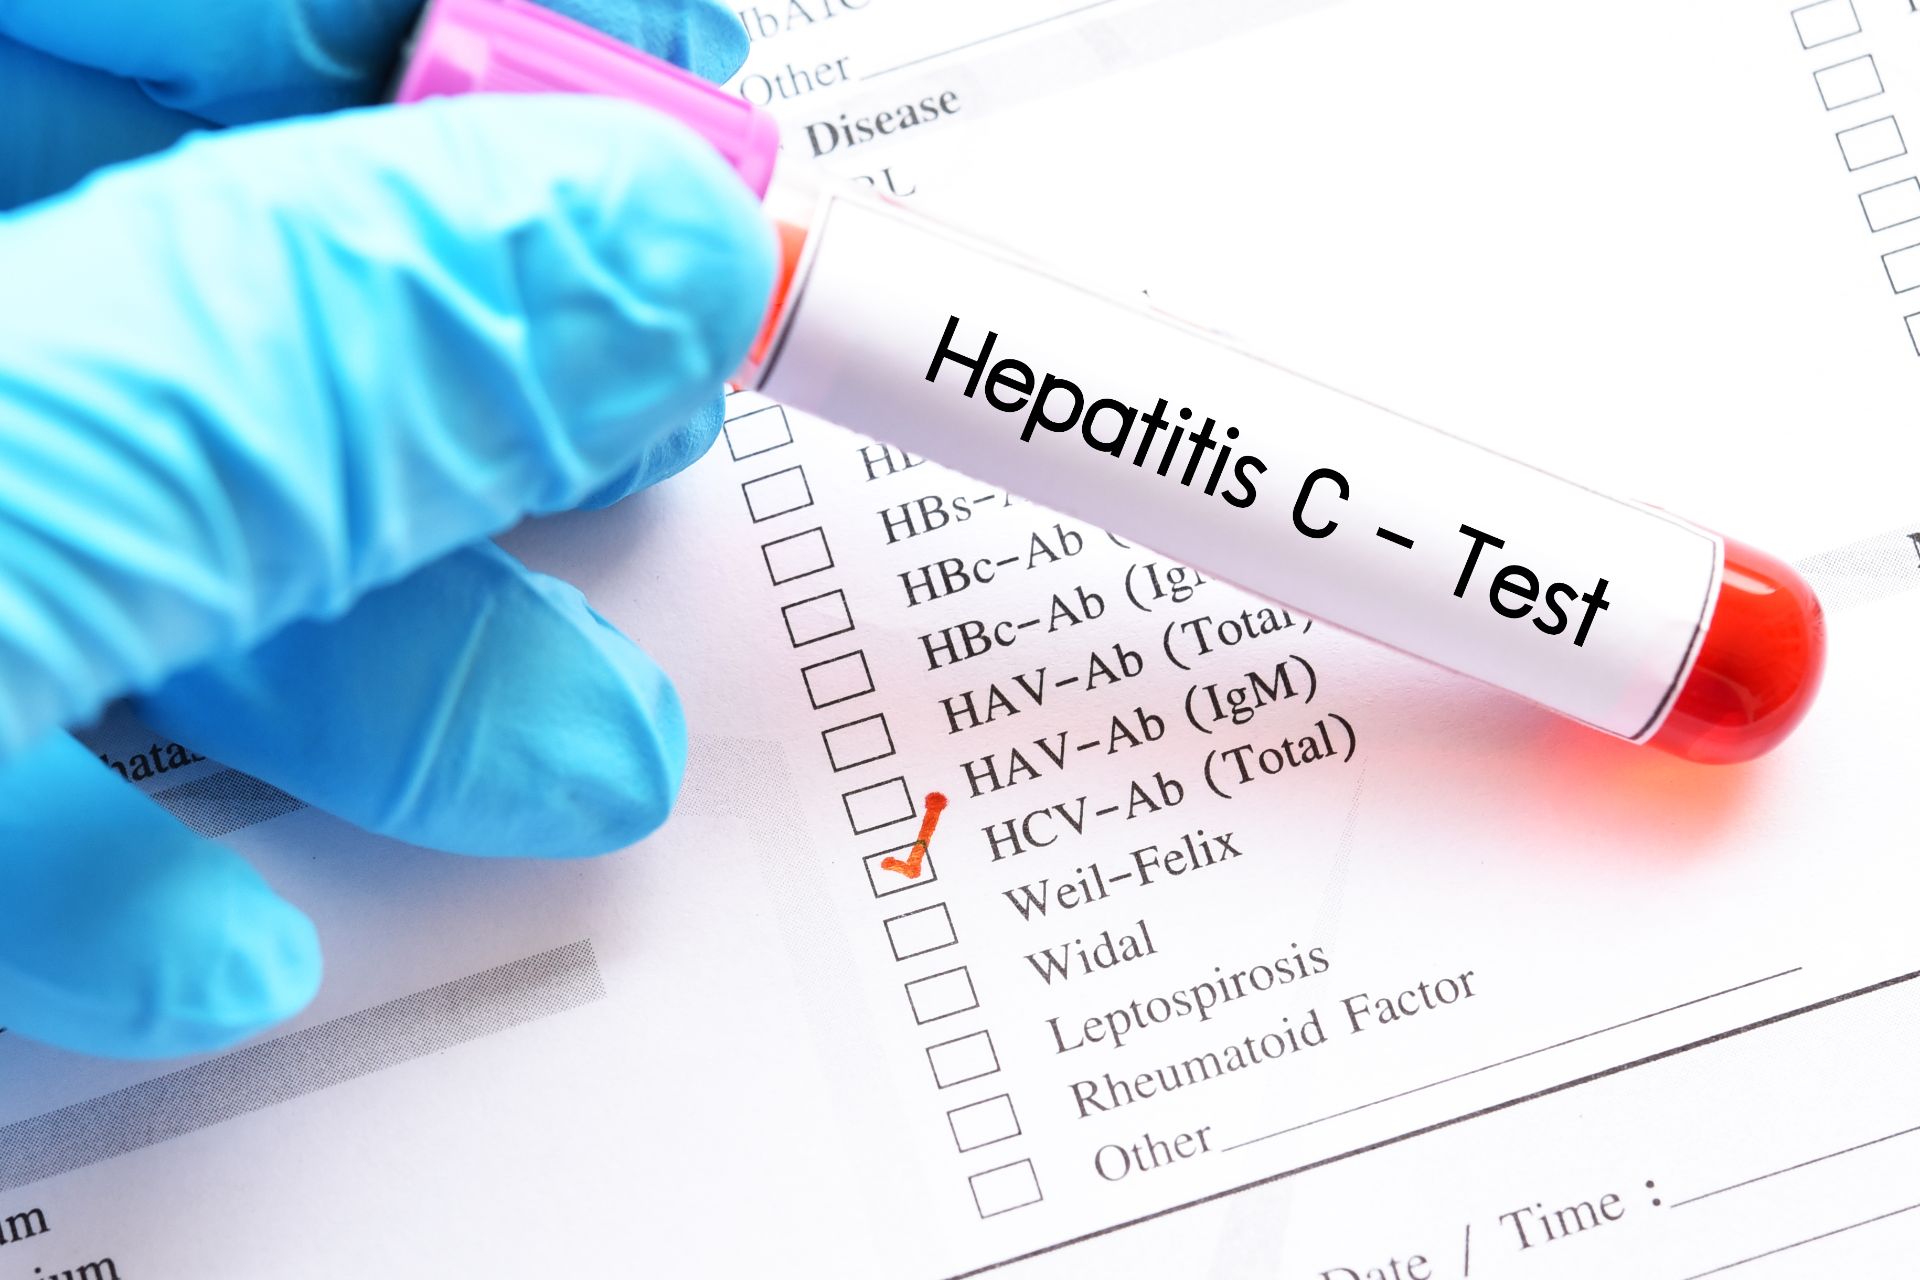 Testare gratuită pentru hepatita C și tratament gratuit, la Suceava